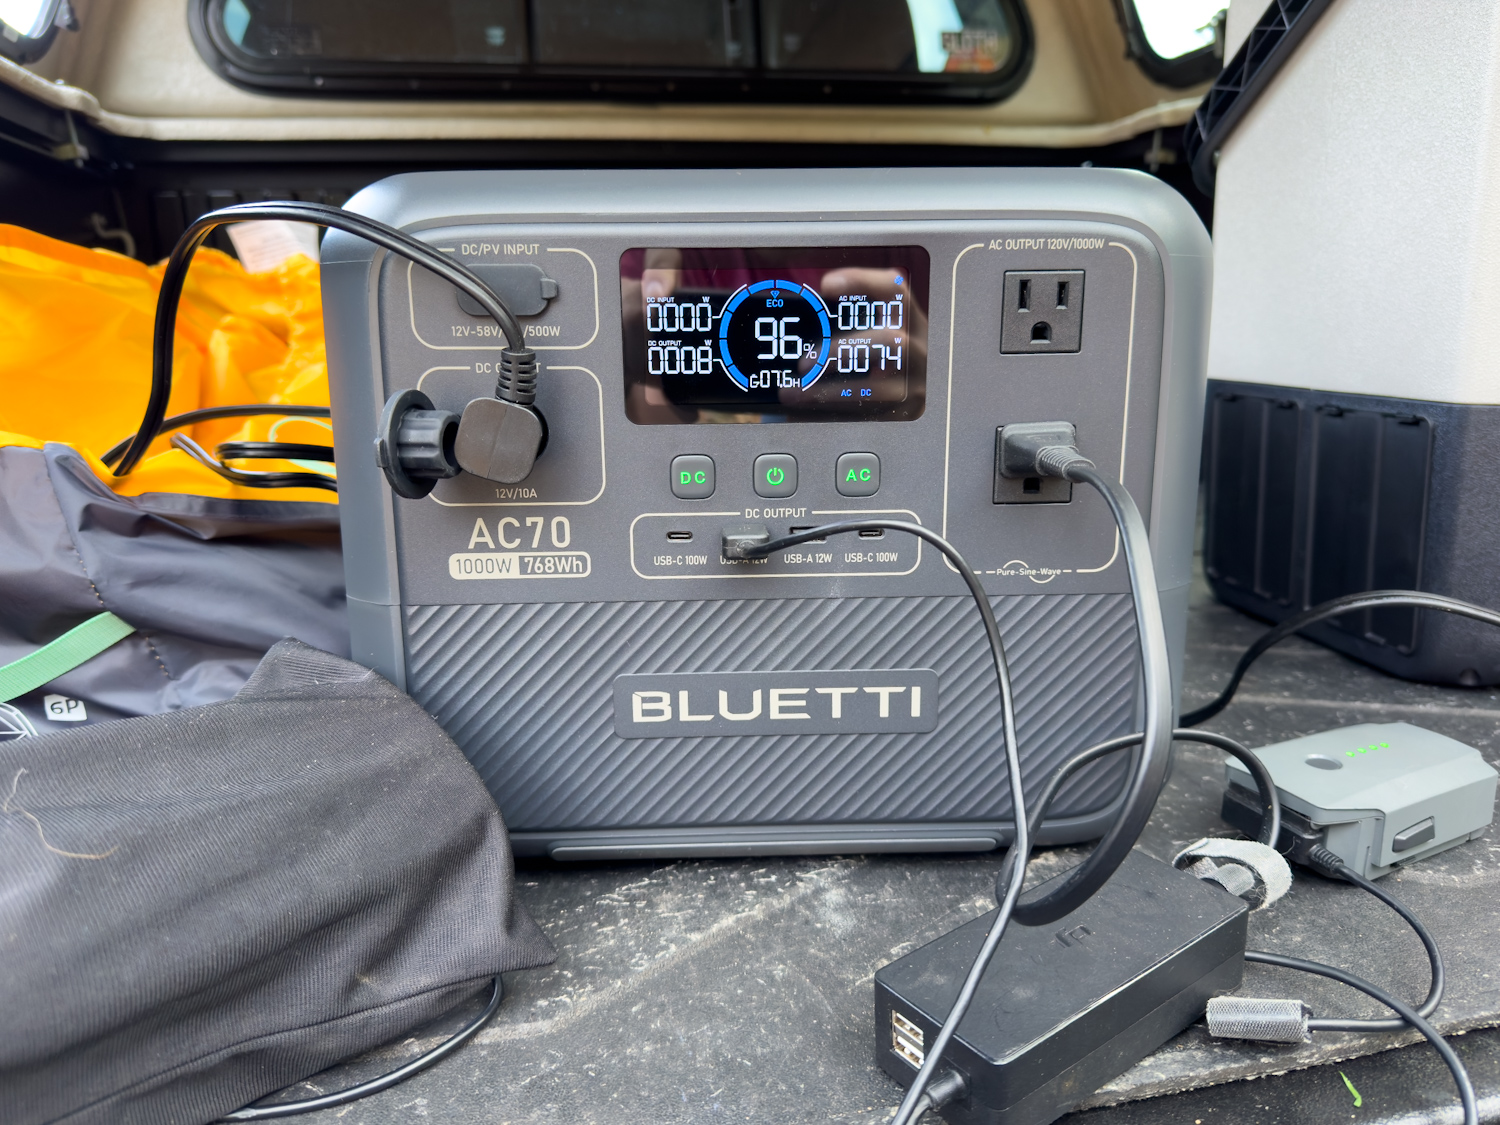 Bluetti AC70 in the truck bed